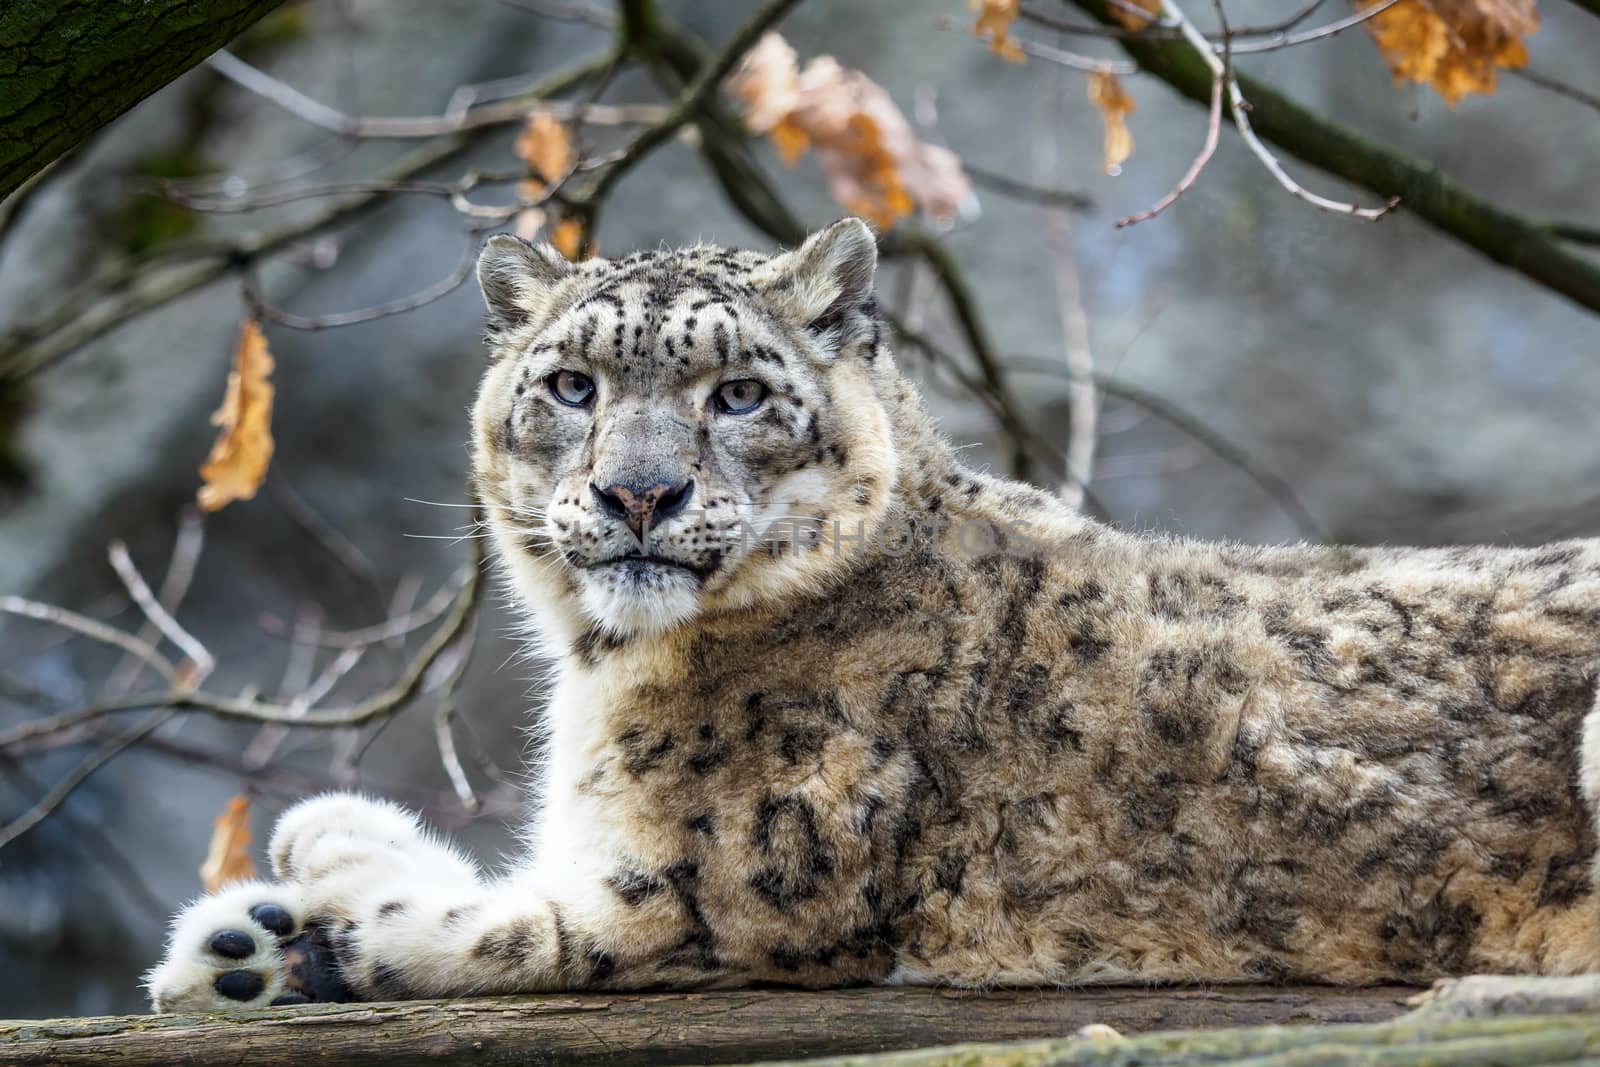 Snow leopard - Irbis (Panthera uncia). by xtrekx